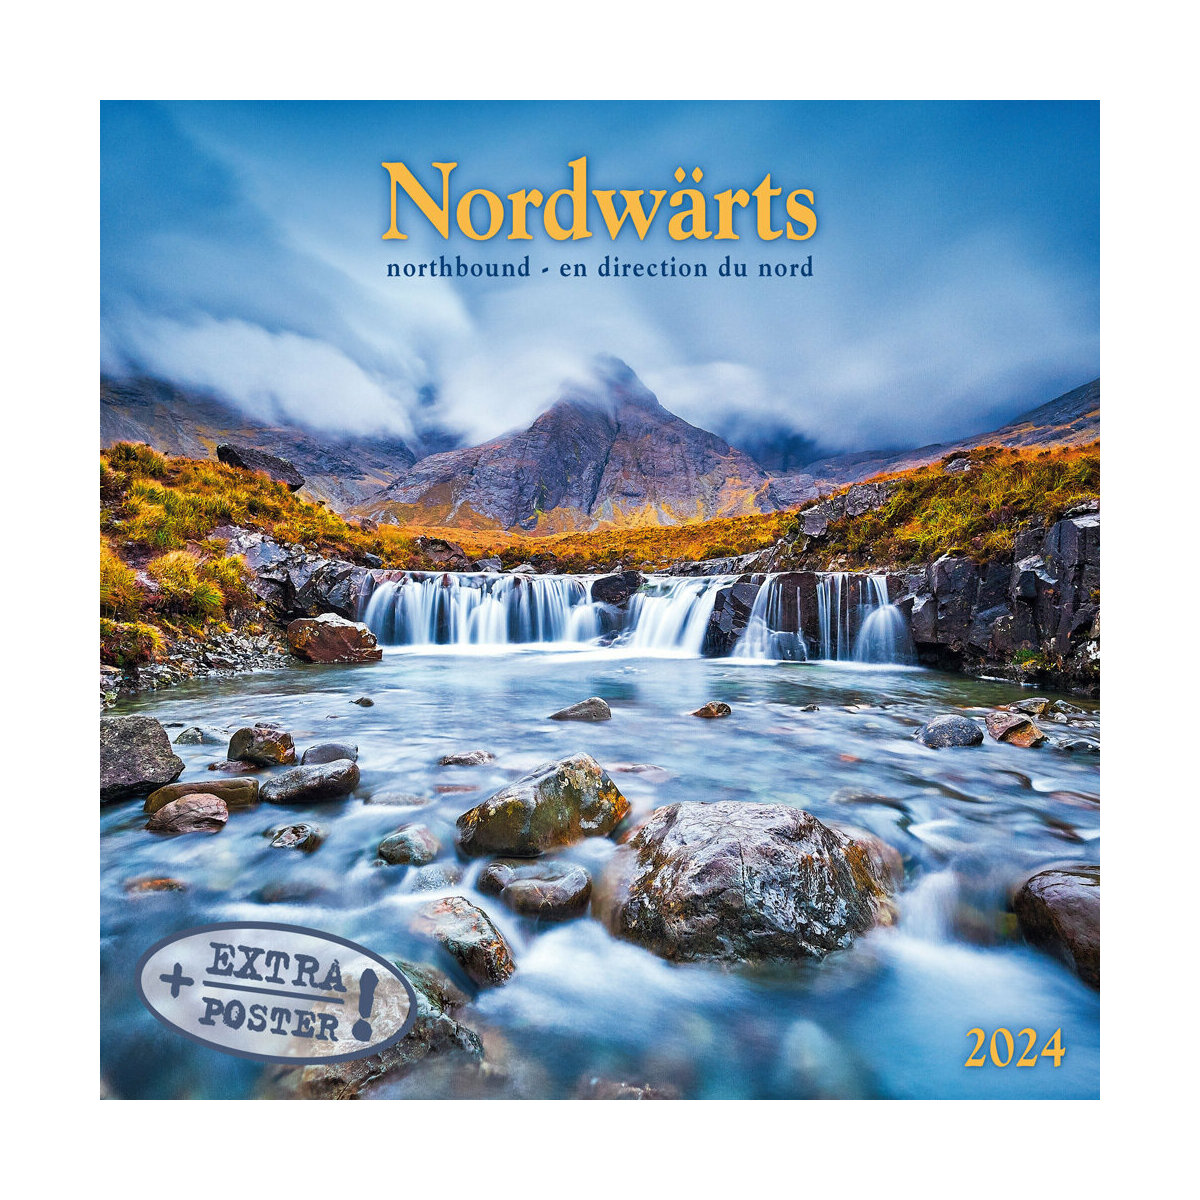 Calendrier paysages nordiques 2024 - cartonné - Collectif - Achat Livre